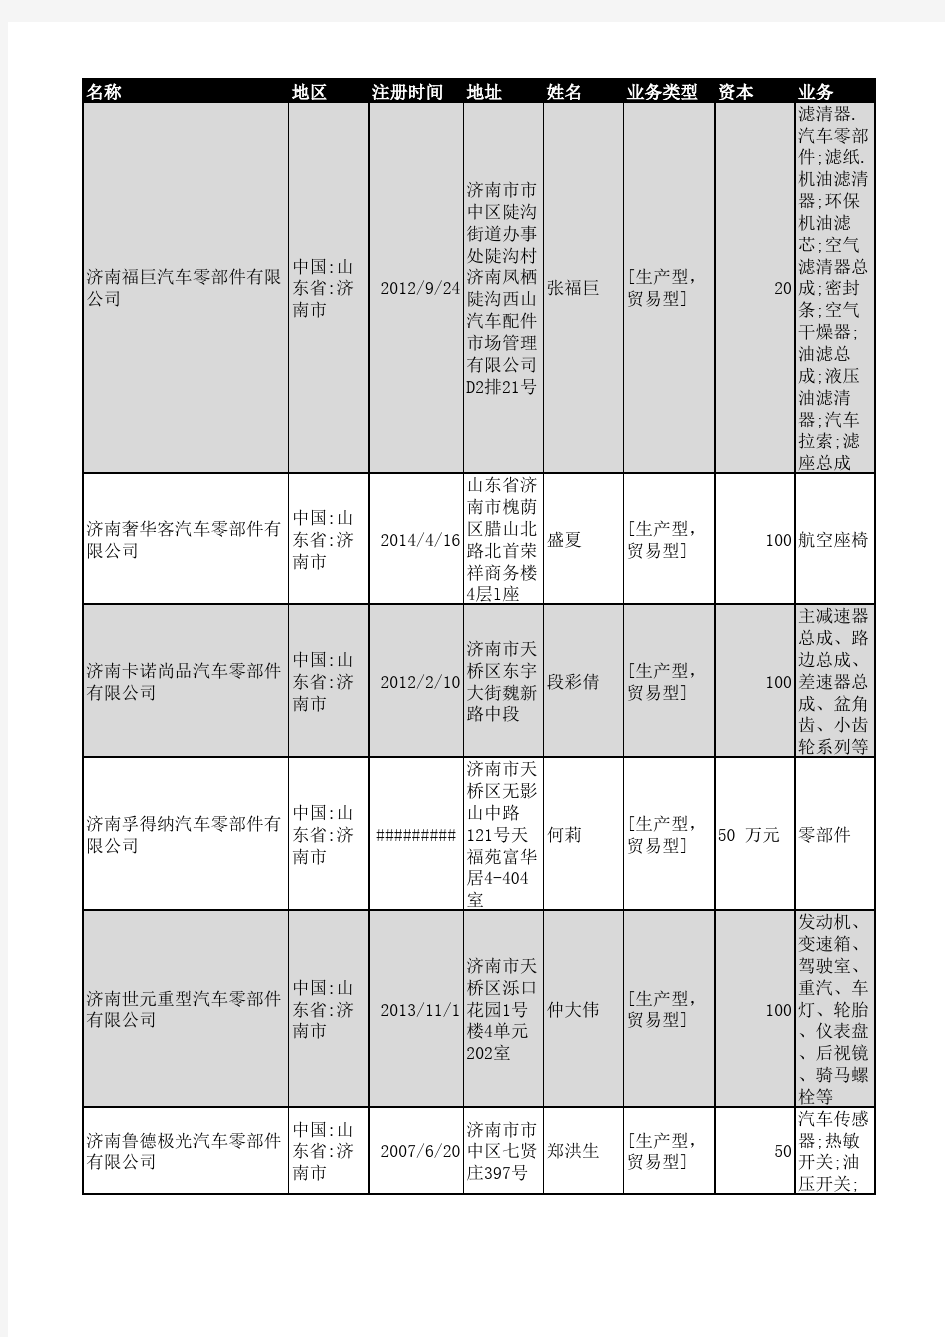 2018年济南市汽车零部件企业名录477家